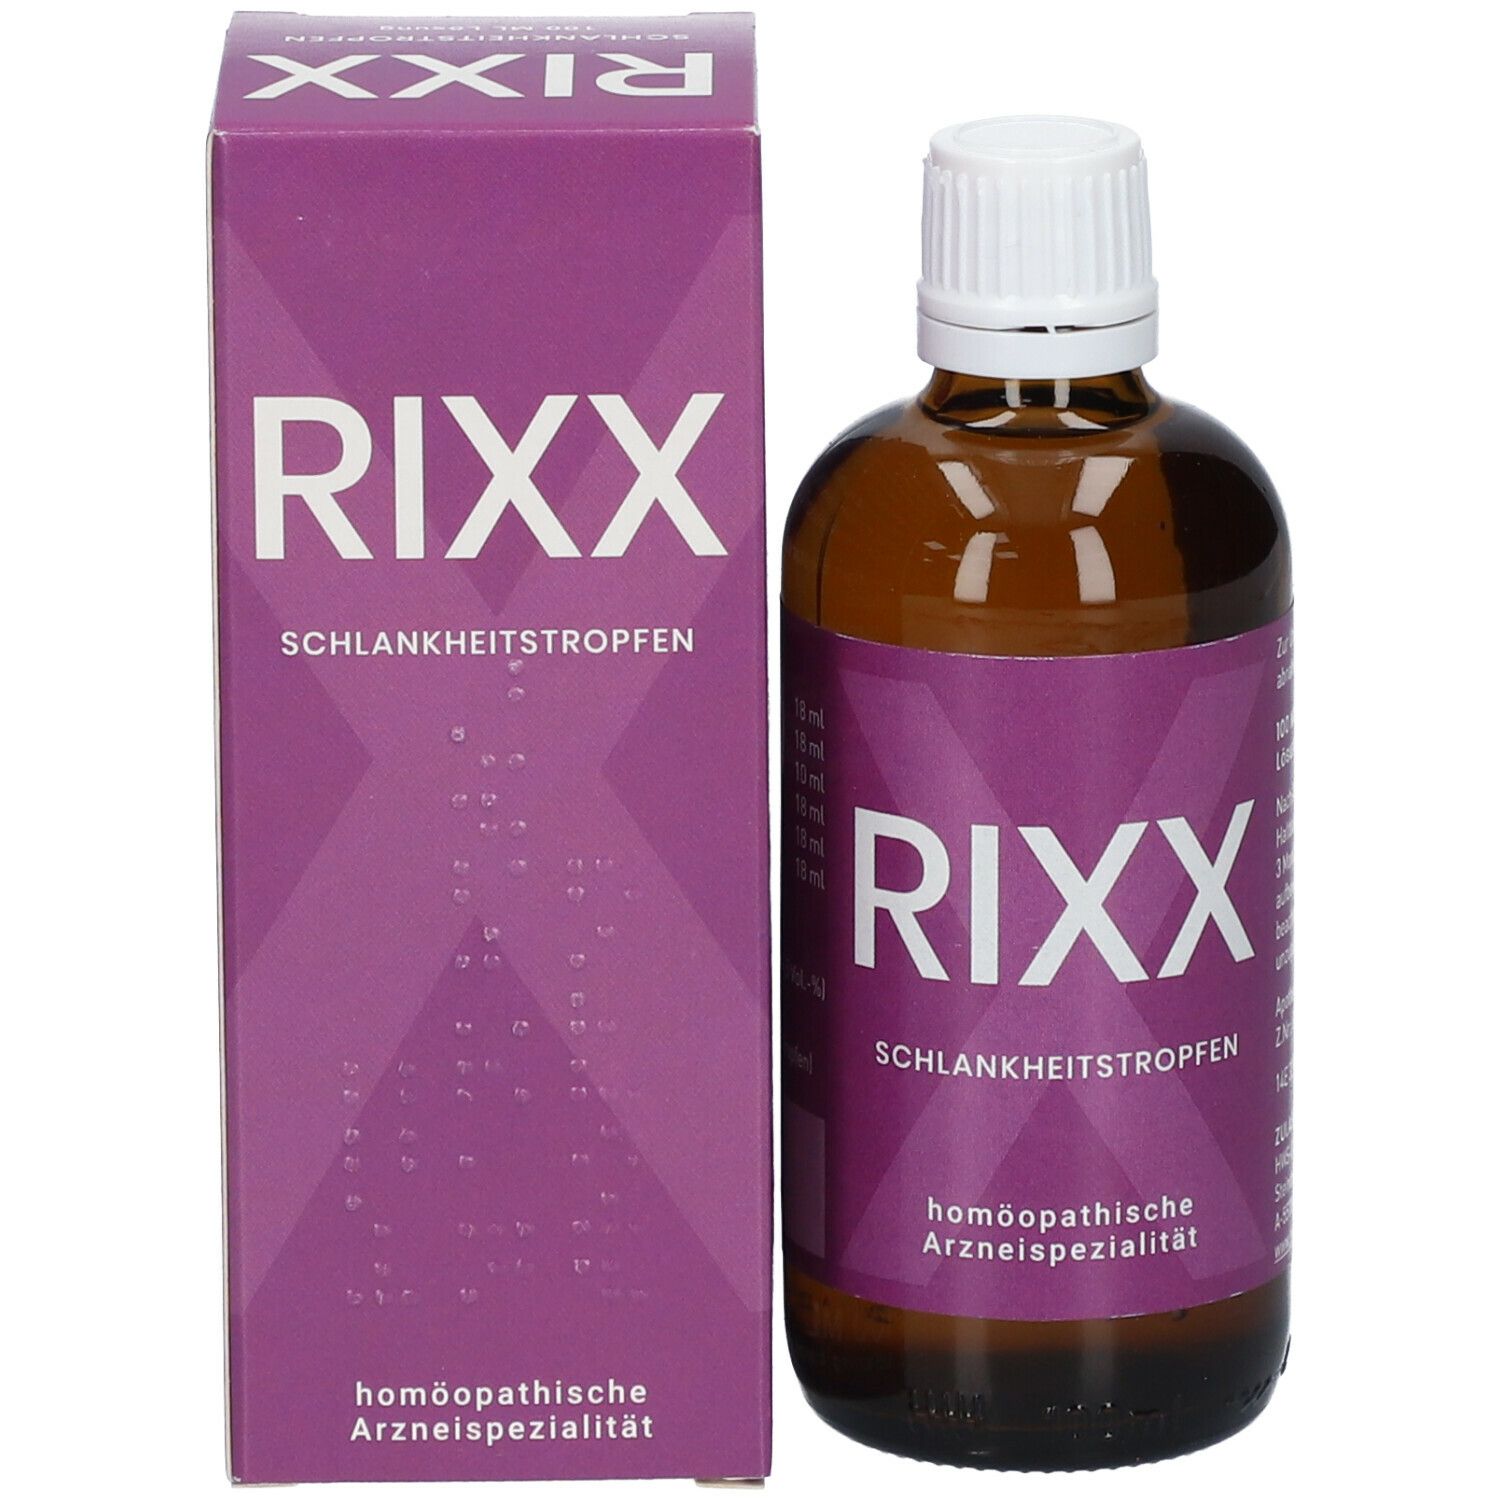 RIXX Schlankheitstropfen